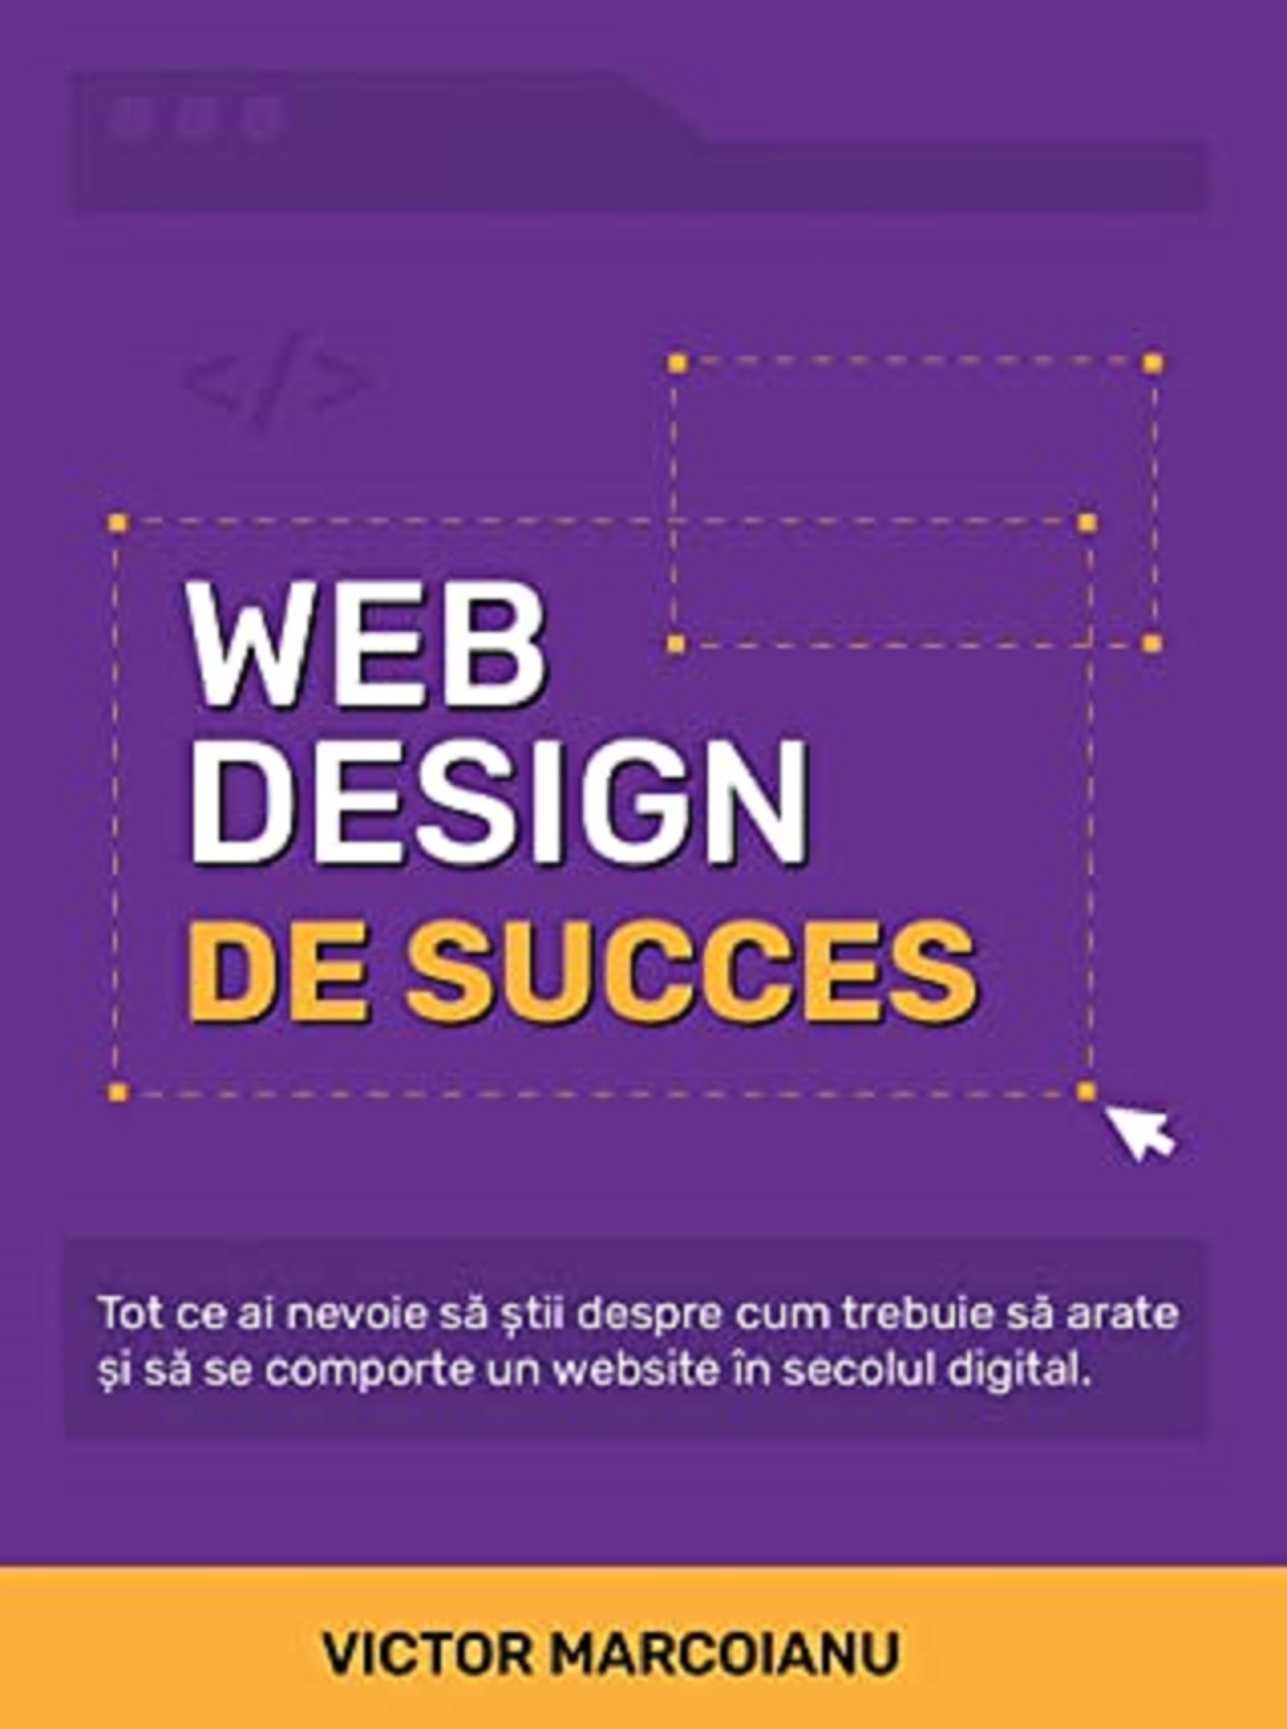 Web Design de Succes | Victor Marcoianu carturesti 2022